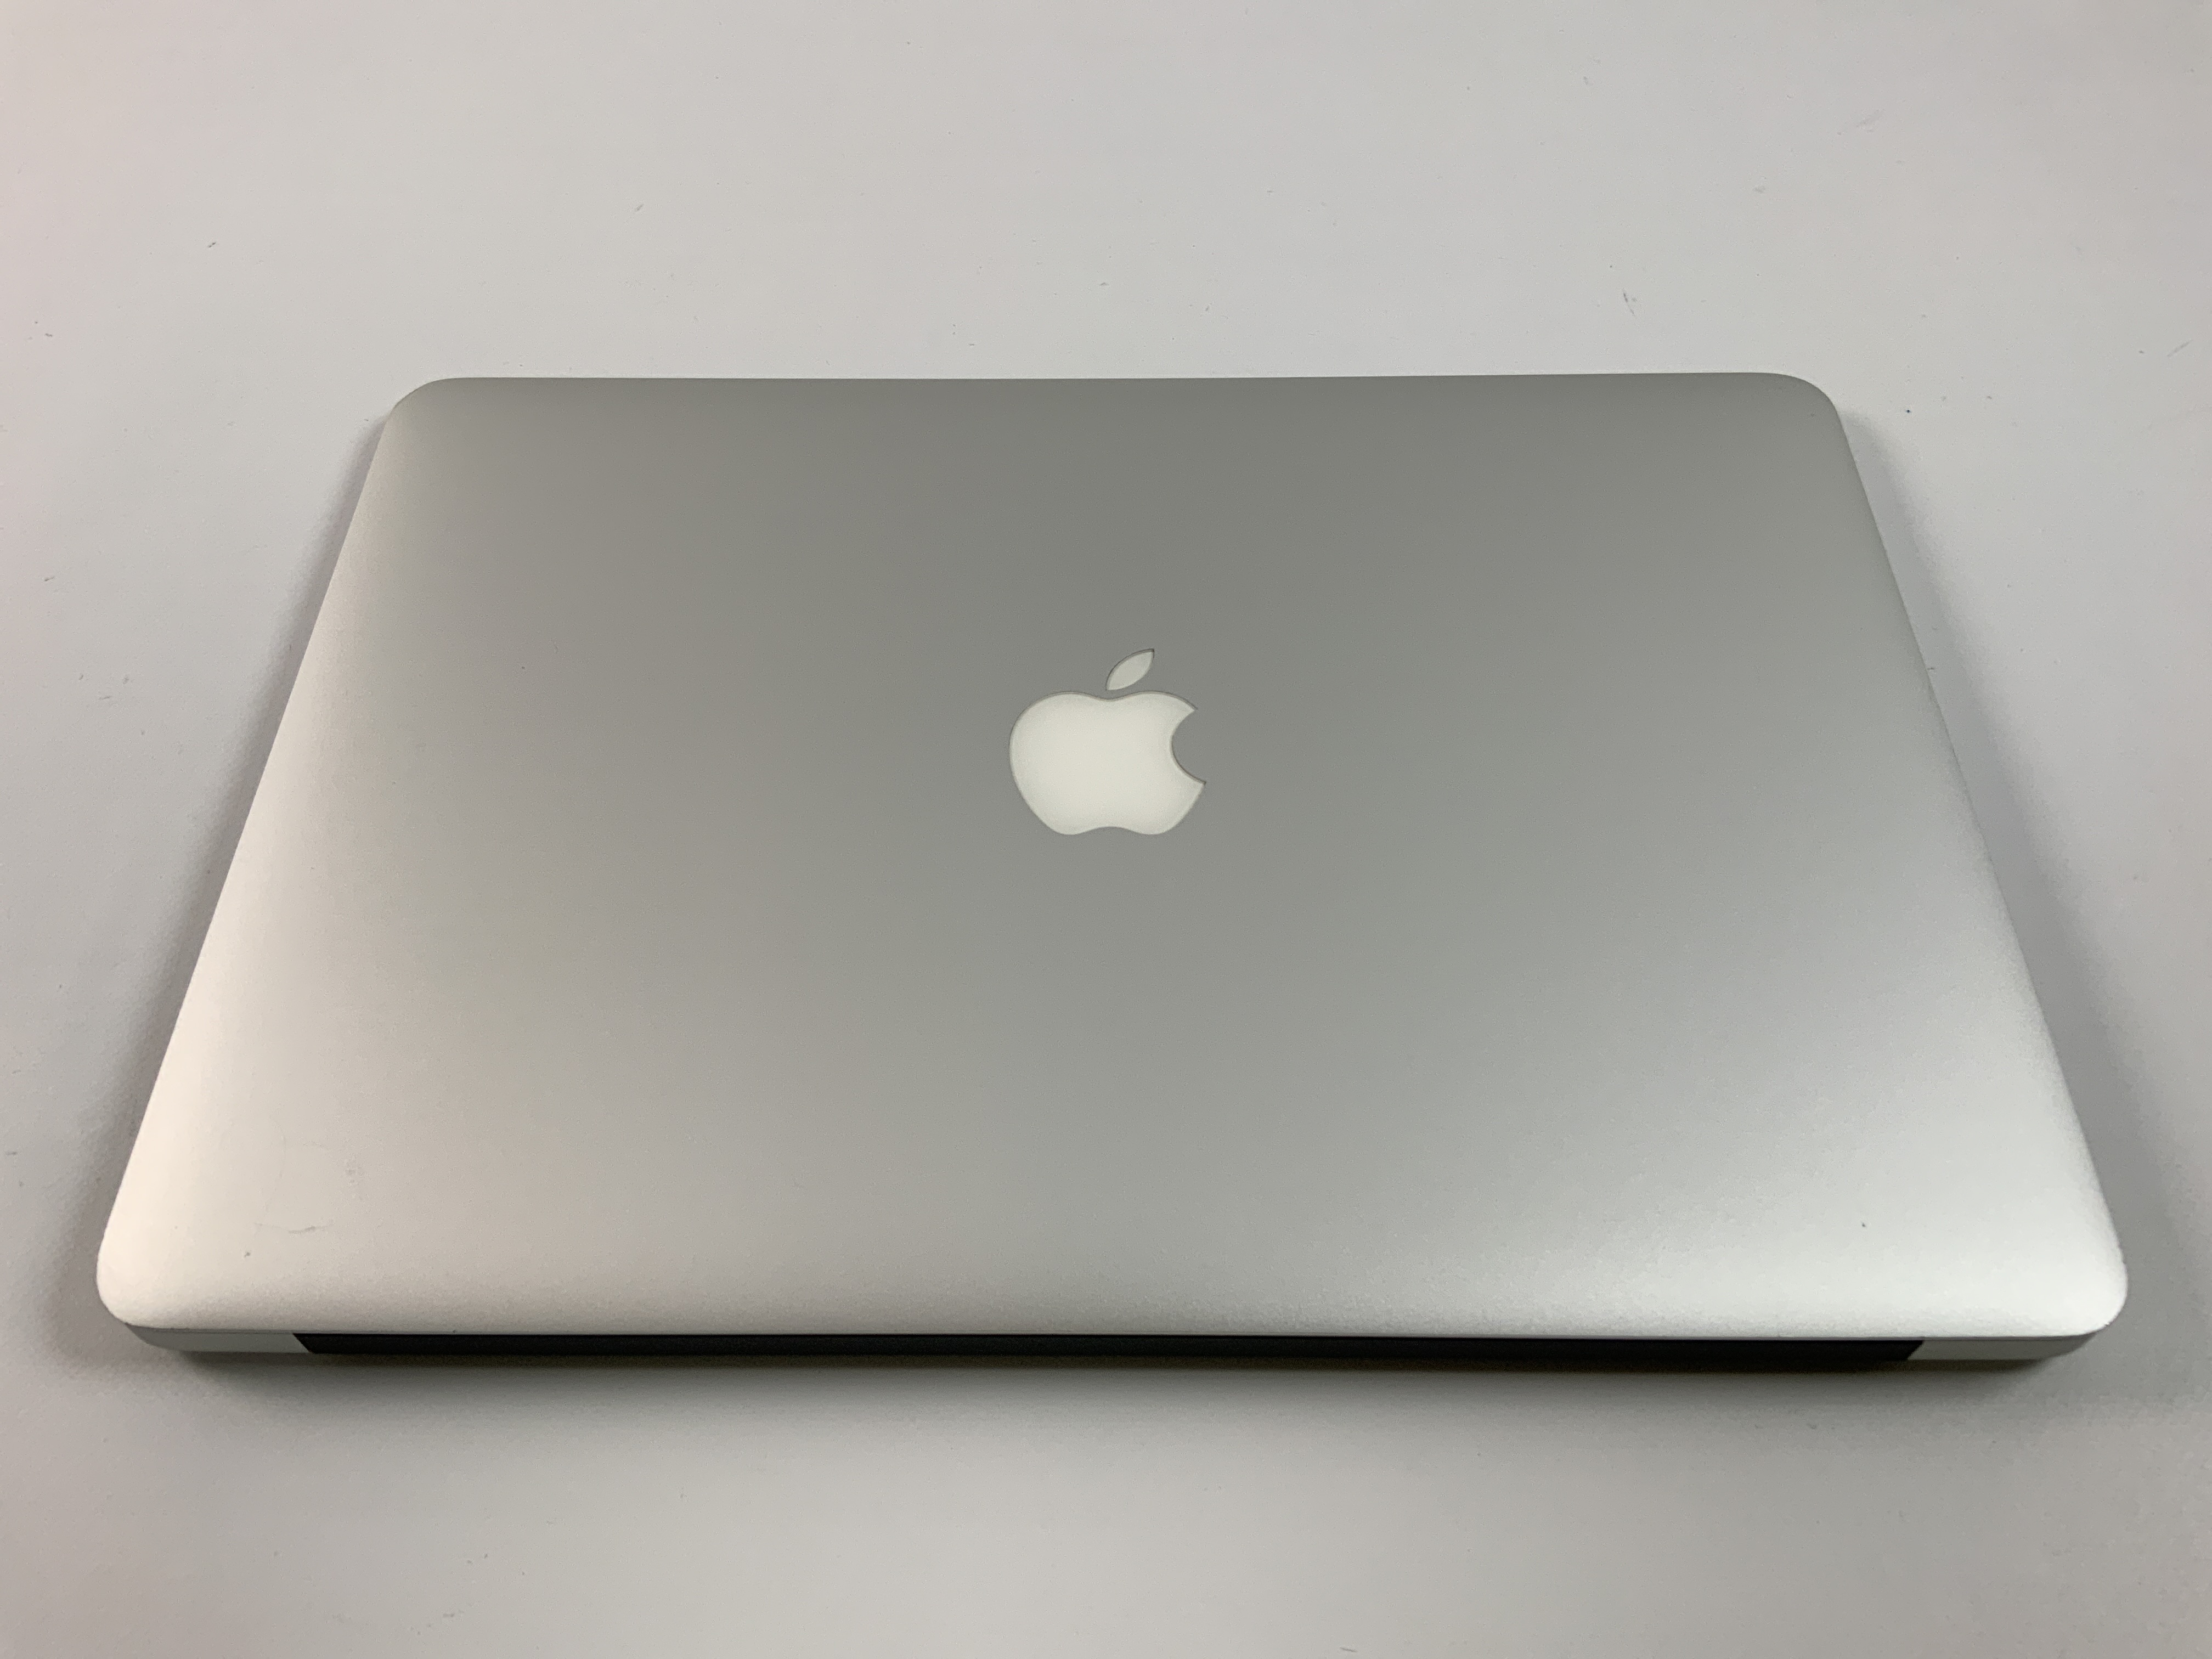 MacBook Air 13" Mid 2017 (Intel Core i5 1.8 GHz 8 GB RAM 256 GB SSD), Intel Core i5 1.8 GHz, 8 GB RAM, 256 GB SSD, image 2